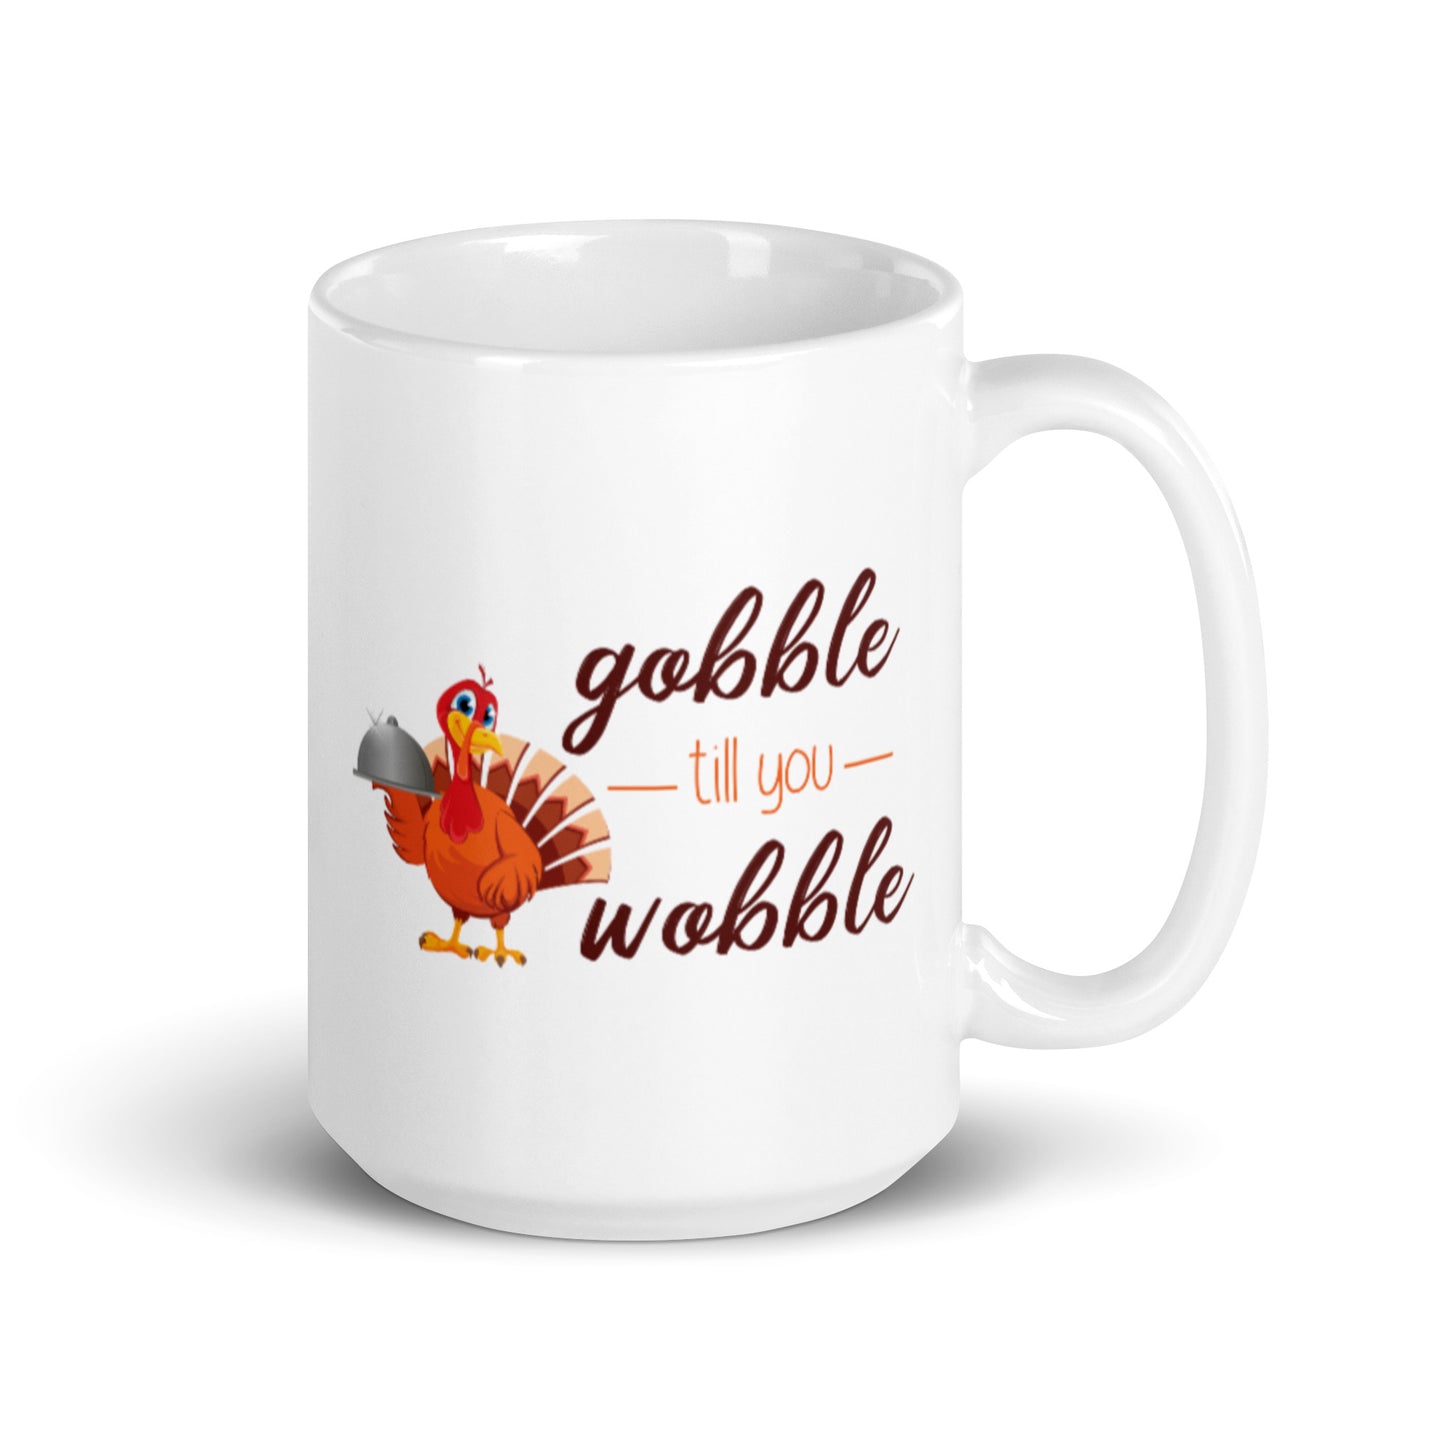 Gobble til you Wobble White glossy mug